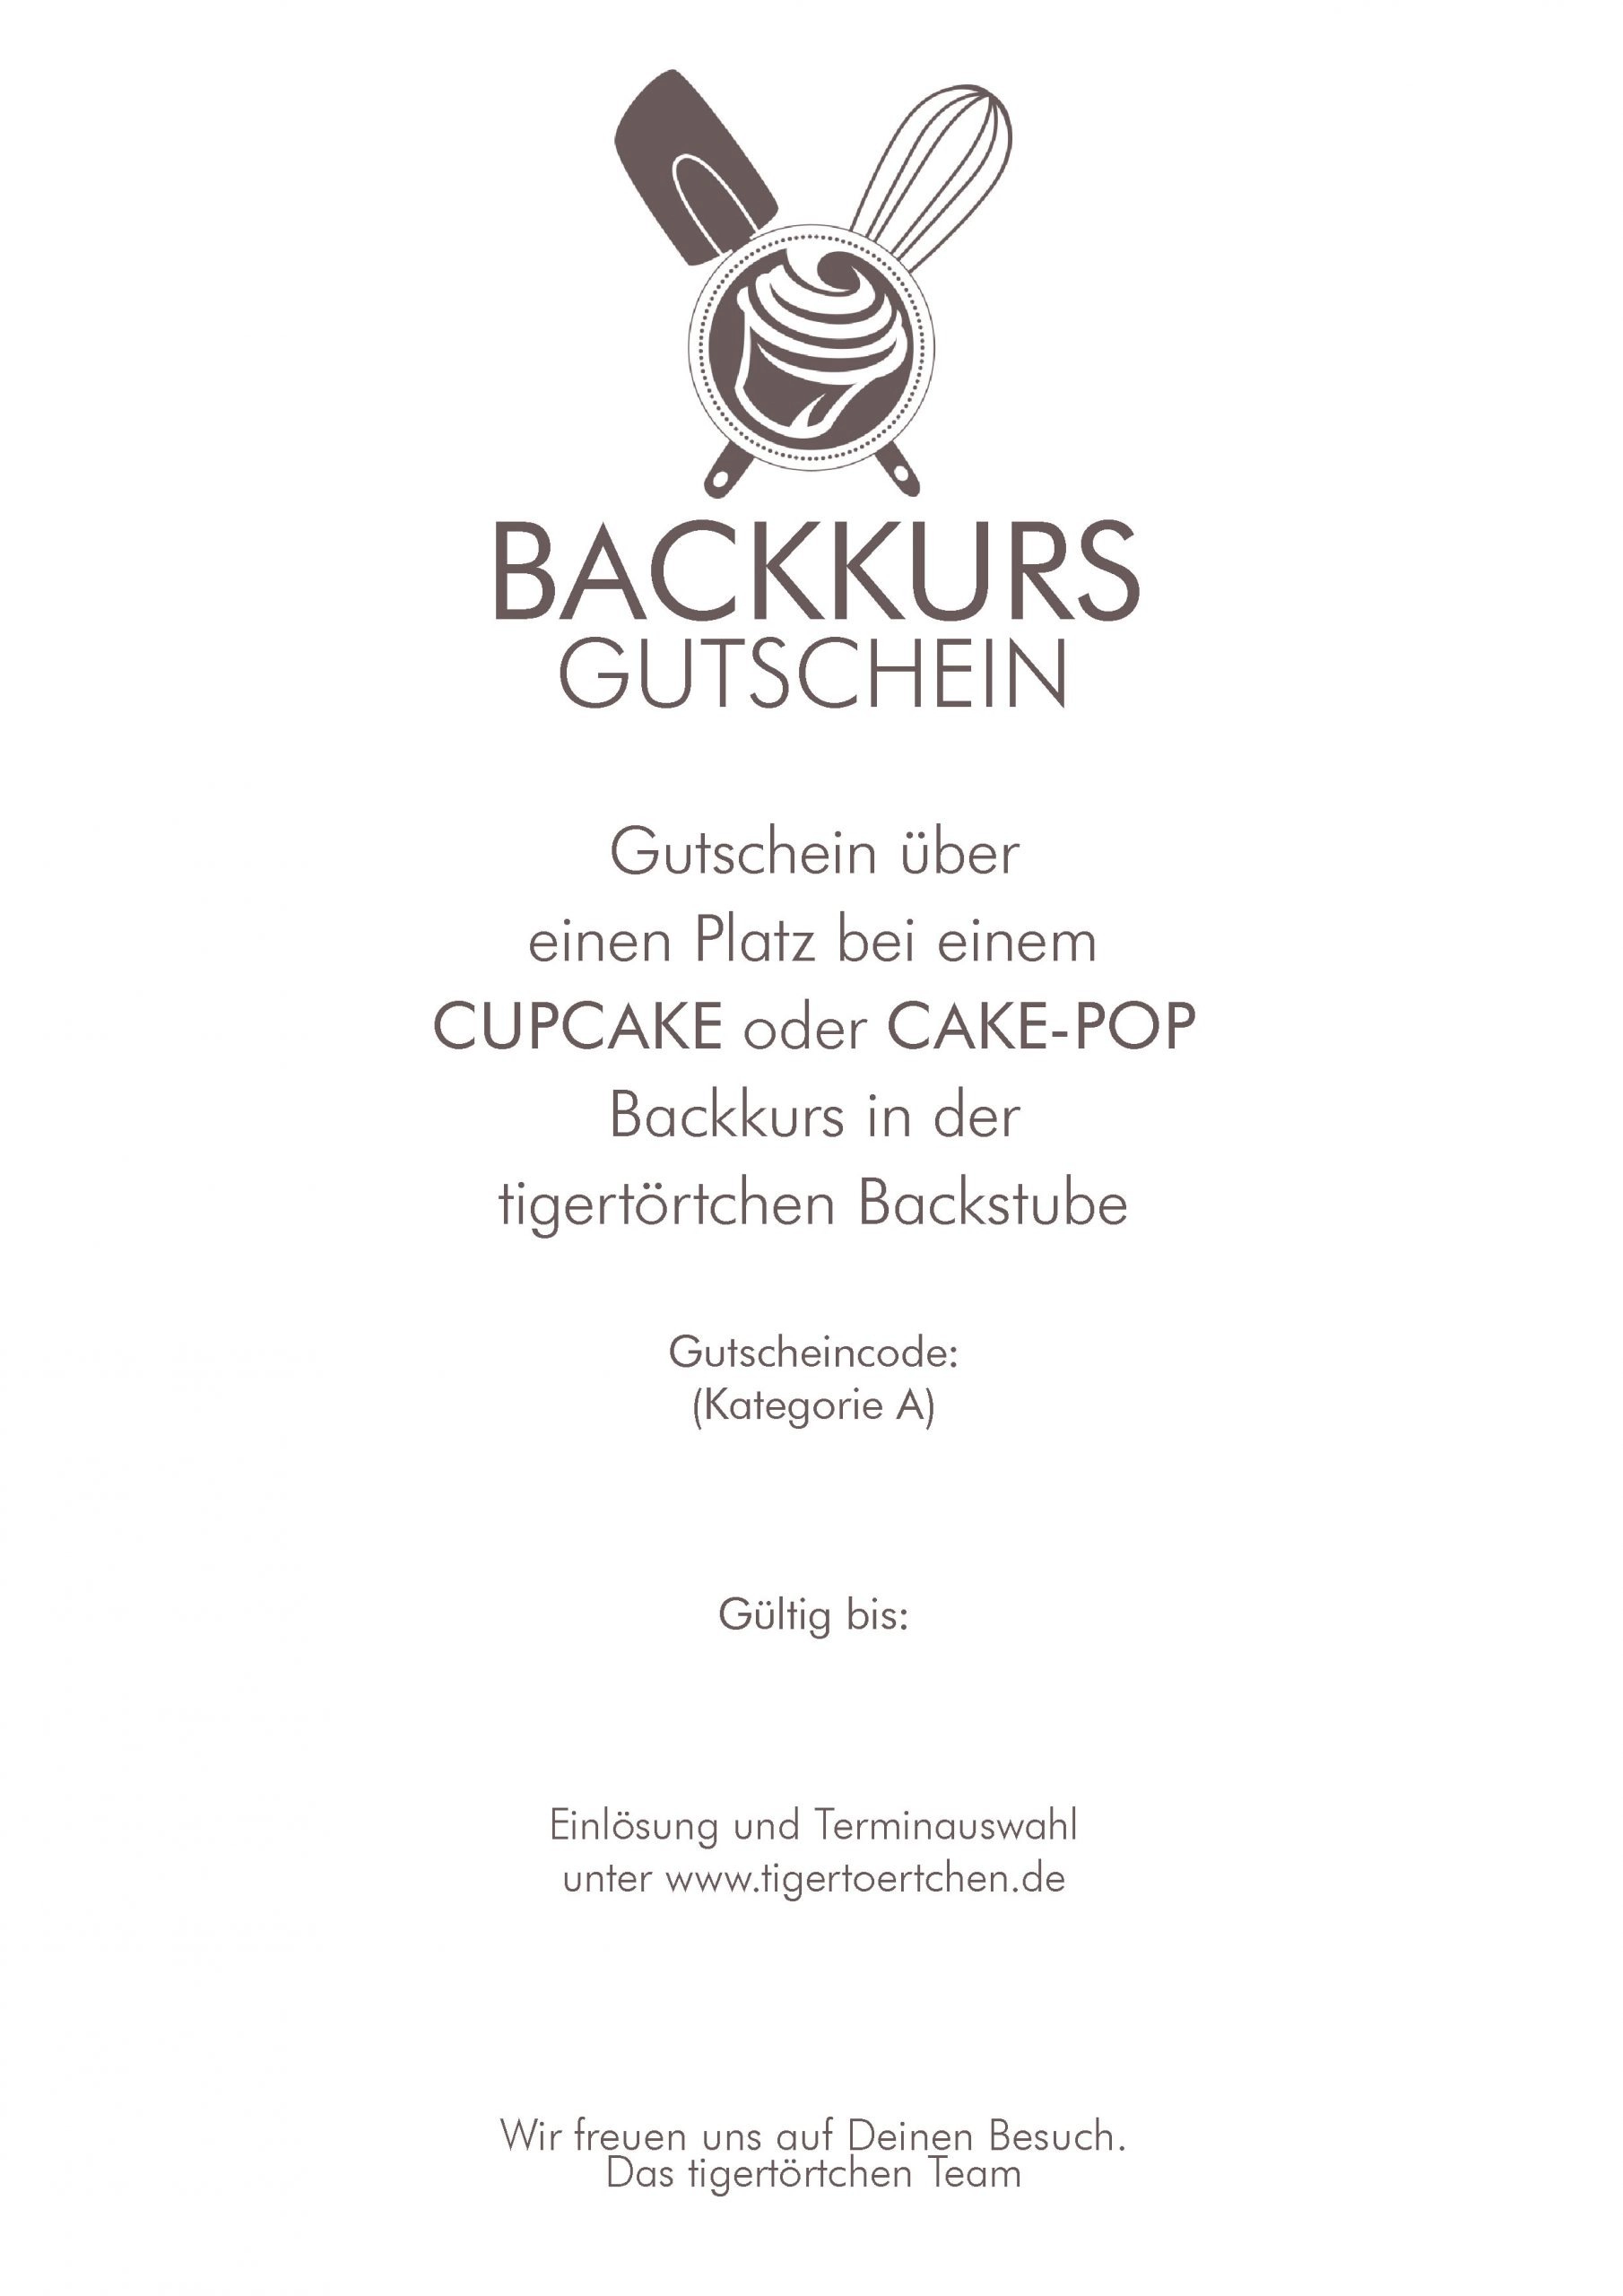 Backkurs-Gutschein - Cupcake & Cake-Pop - tigertörtchen Berlin